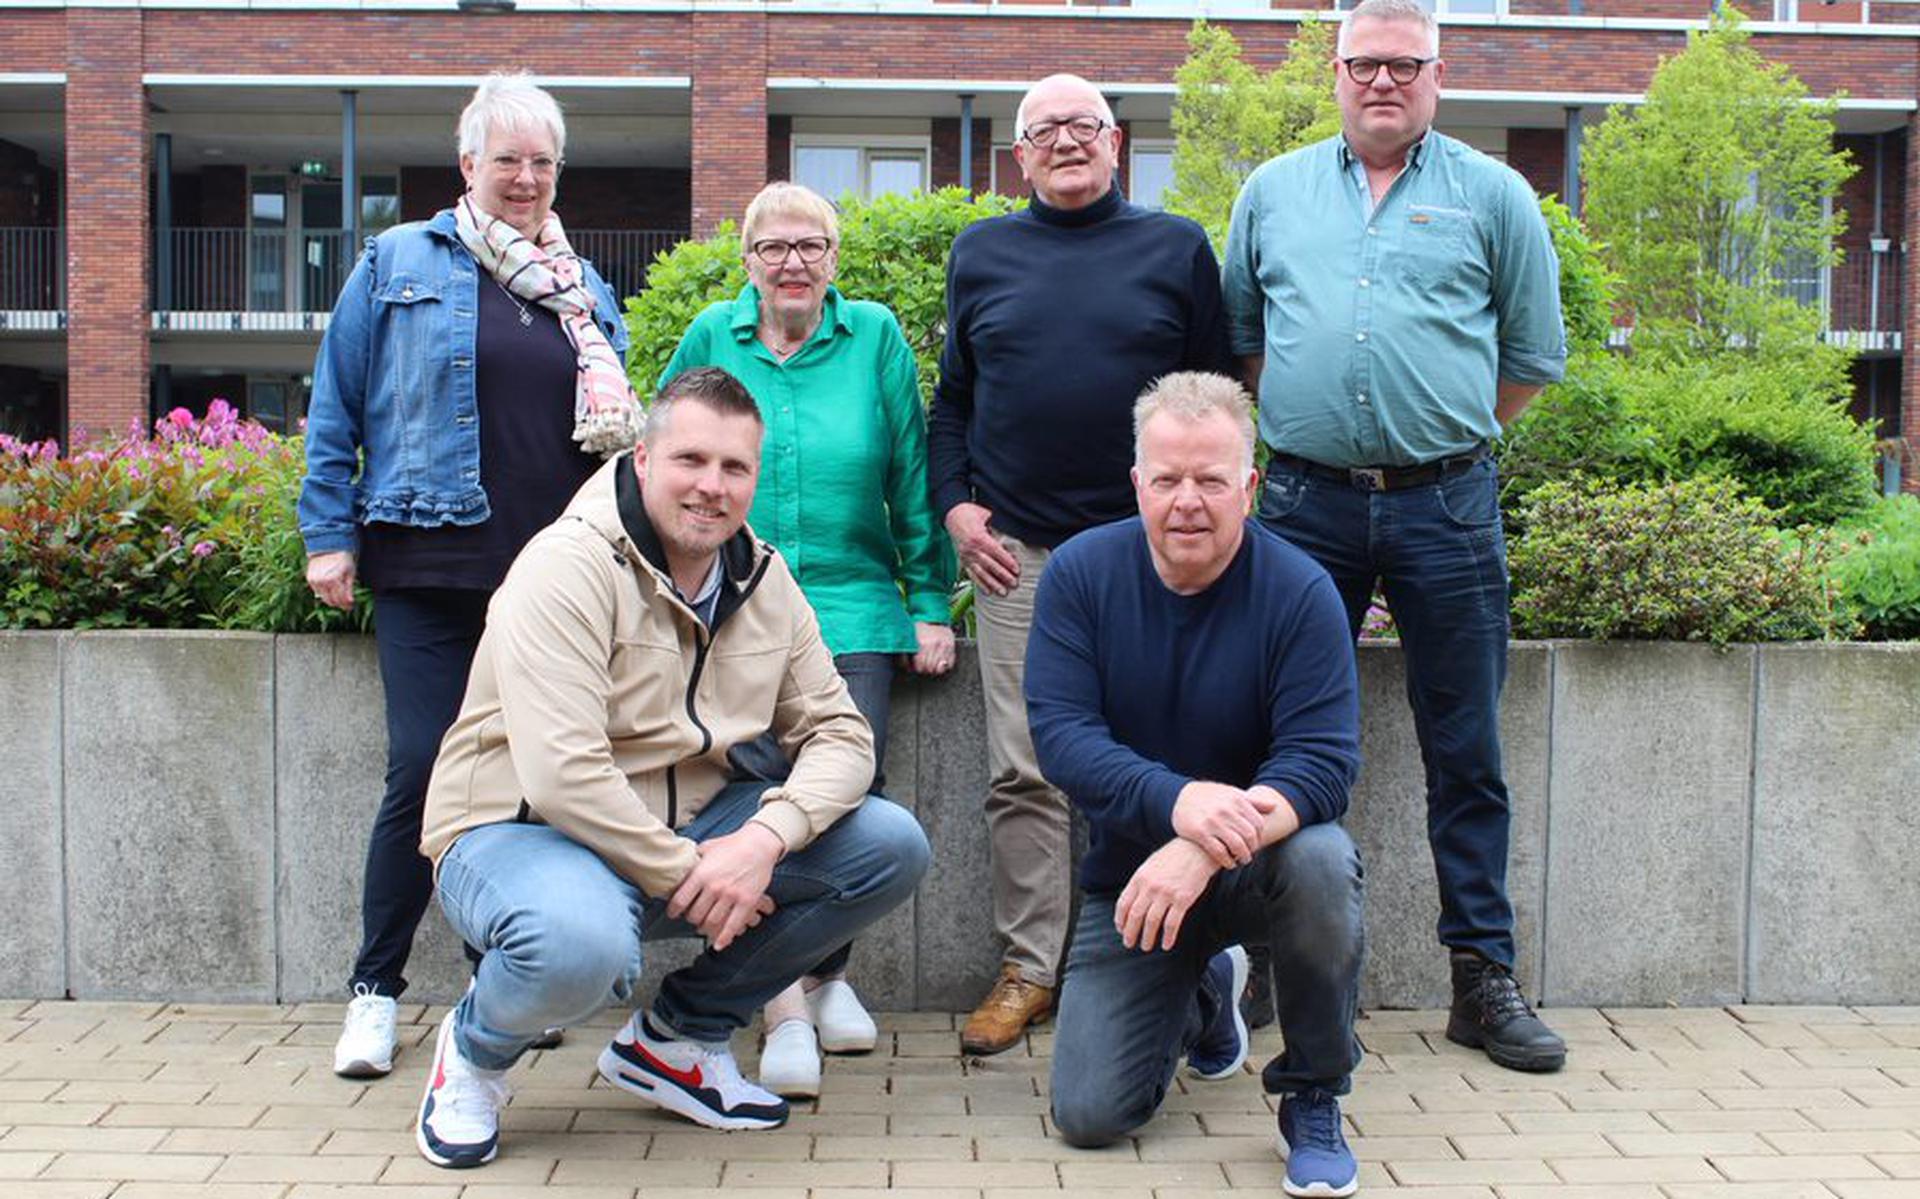 De reüniecommissie: staande van links naar rechts: Bea Jansema, Trijnie Kuipers, Bert Kuipers ,Harrie Boukema; voorgrond: Erwin Bos en Harrie Doedens. Eigen foto